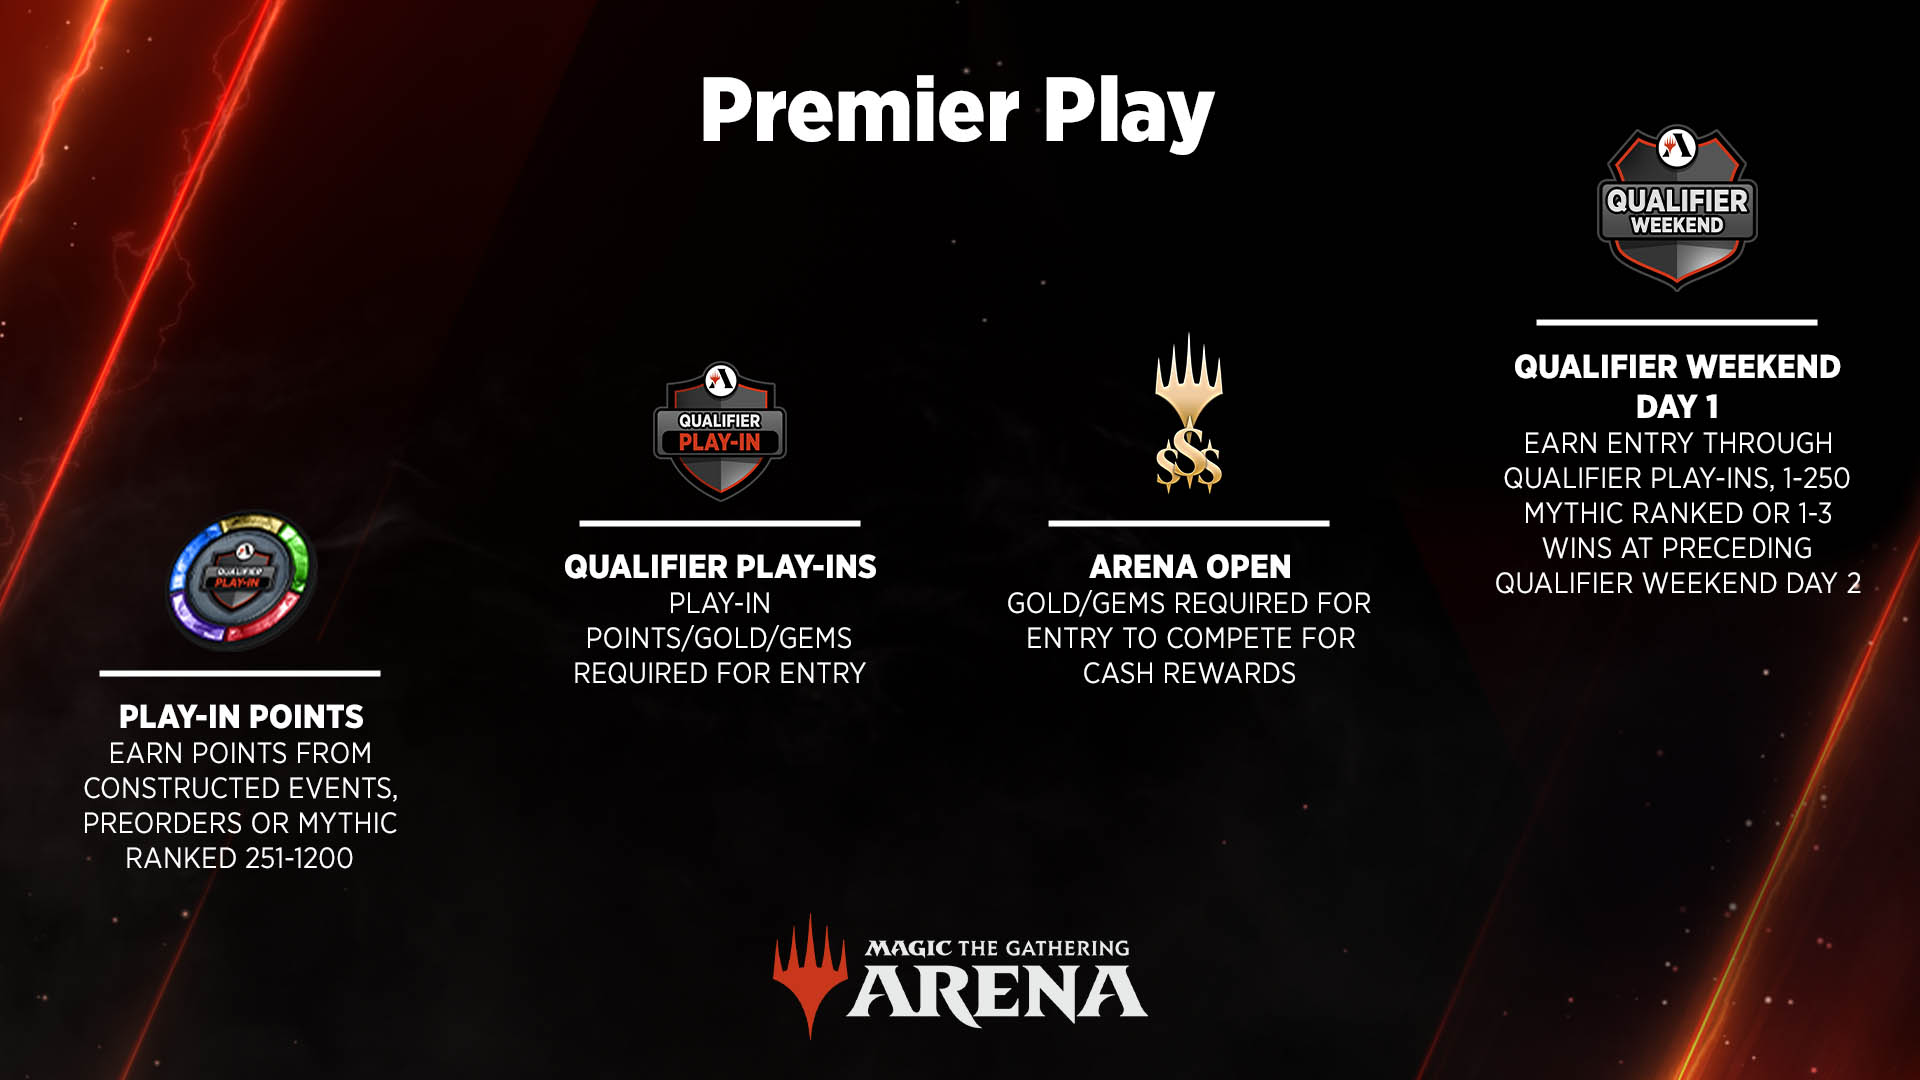 Premier Play Weg Play-In-Punkte gefolgt von Qualifier-Play-Ins und Arena Open Events, gipfelnd in Tag eins des Qualifier-Wochenende-Events